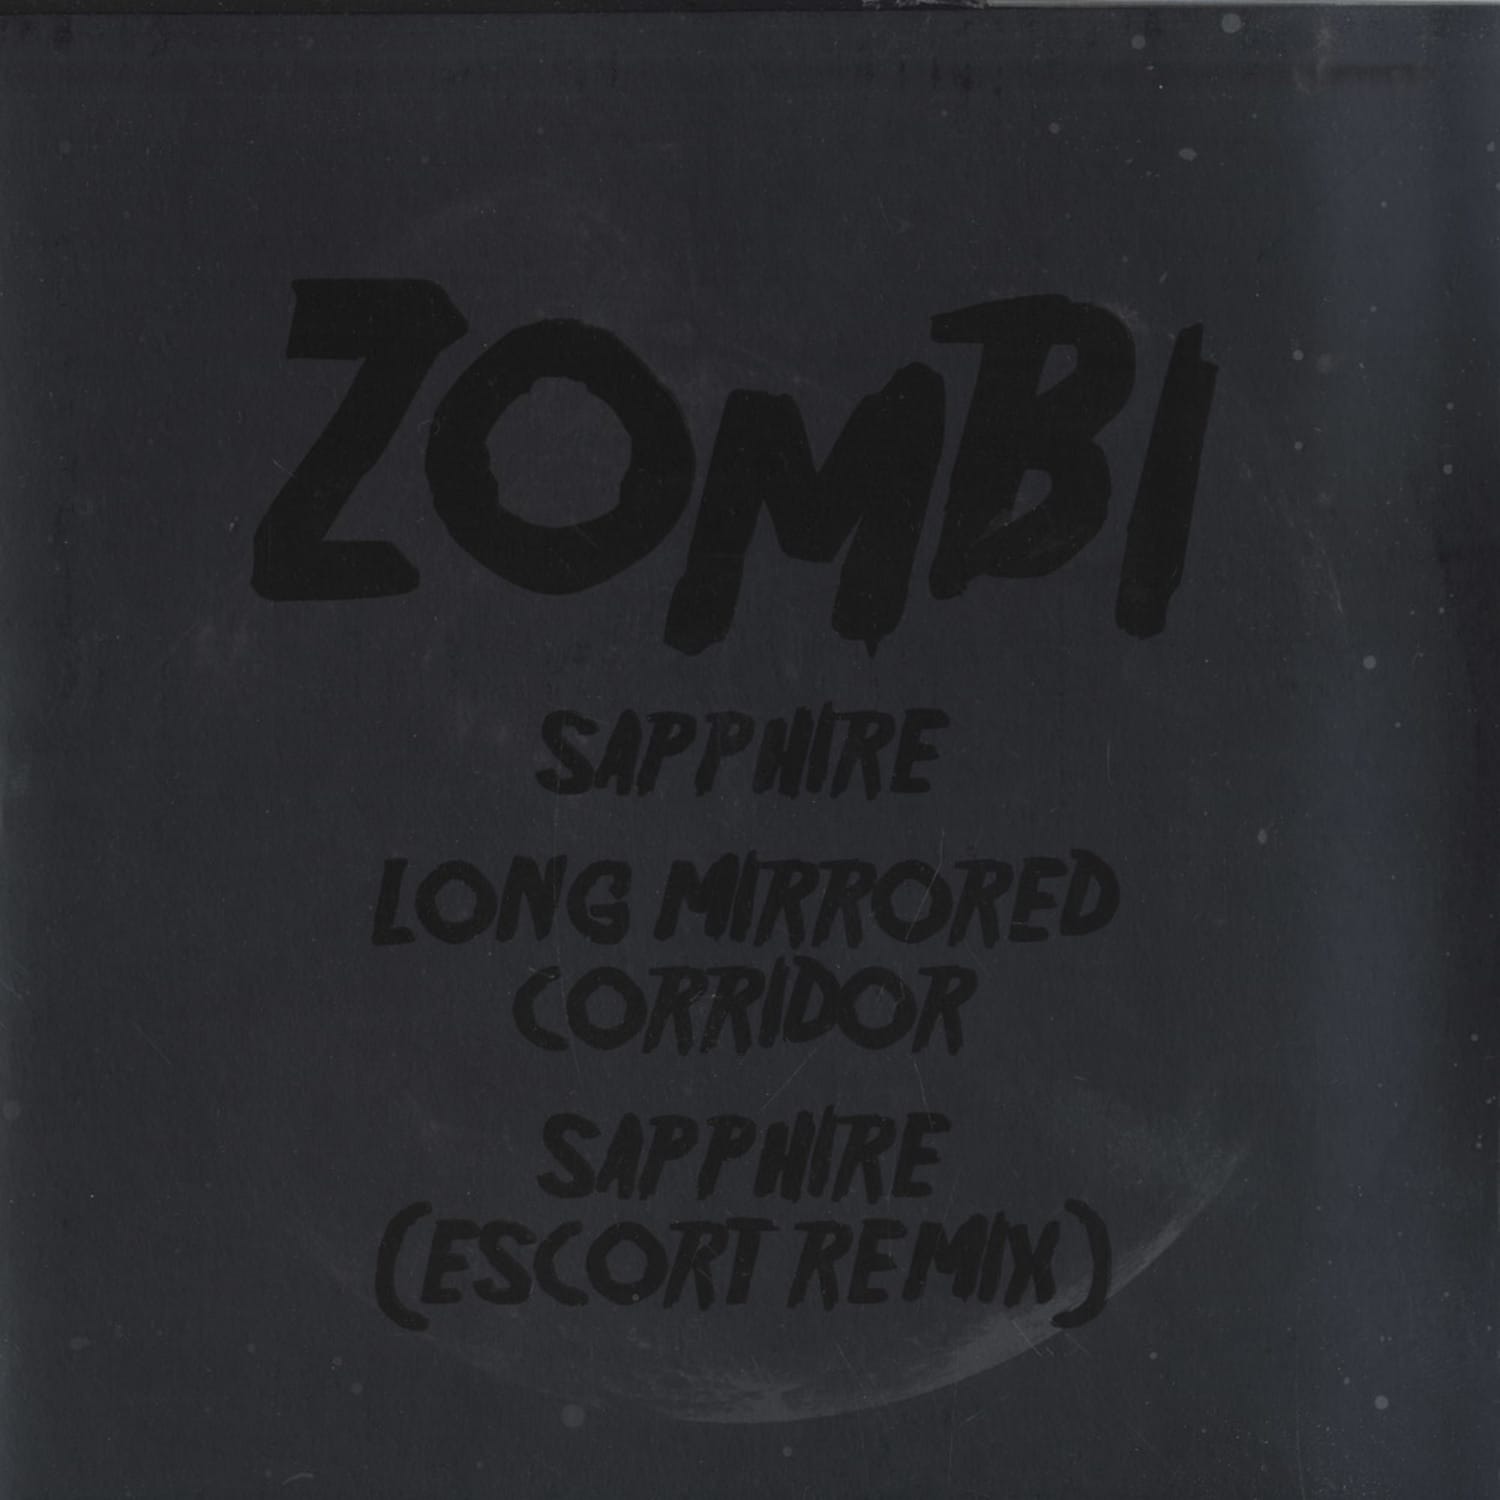 Zombi - SAPPHIRE / LONG MIRRORED CORRIDOR